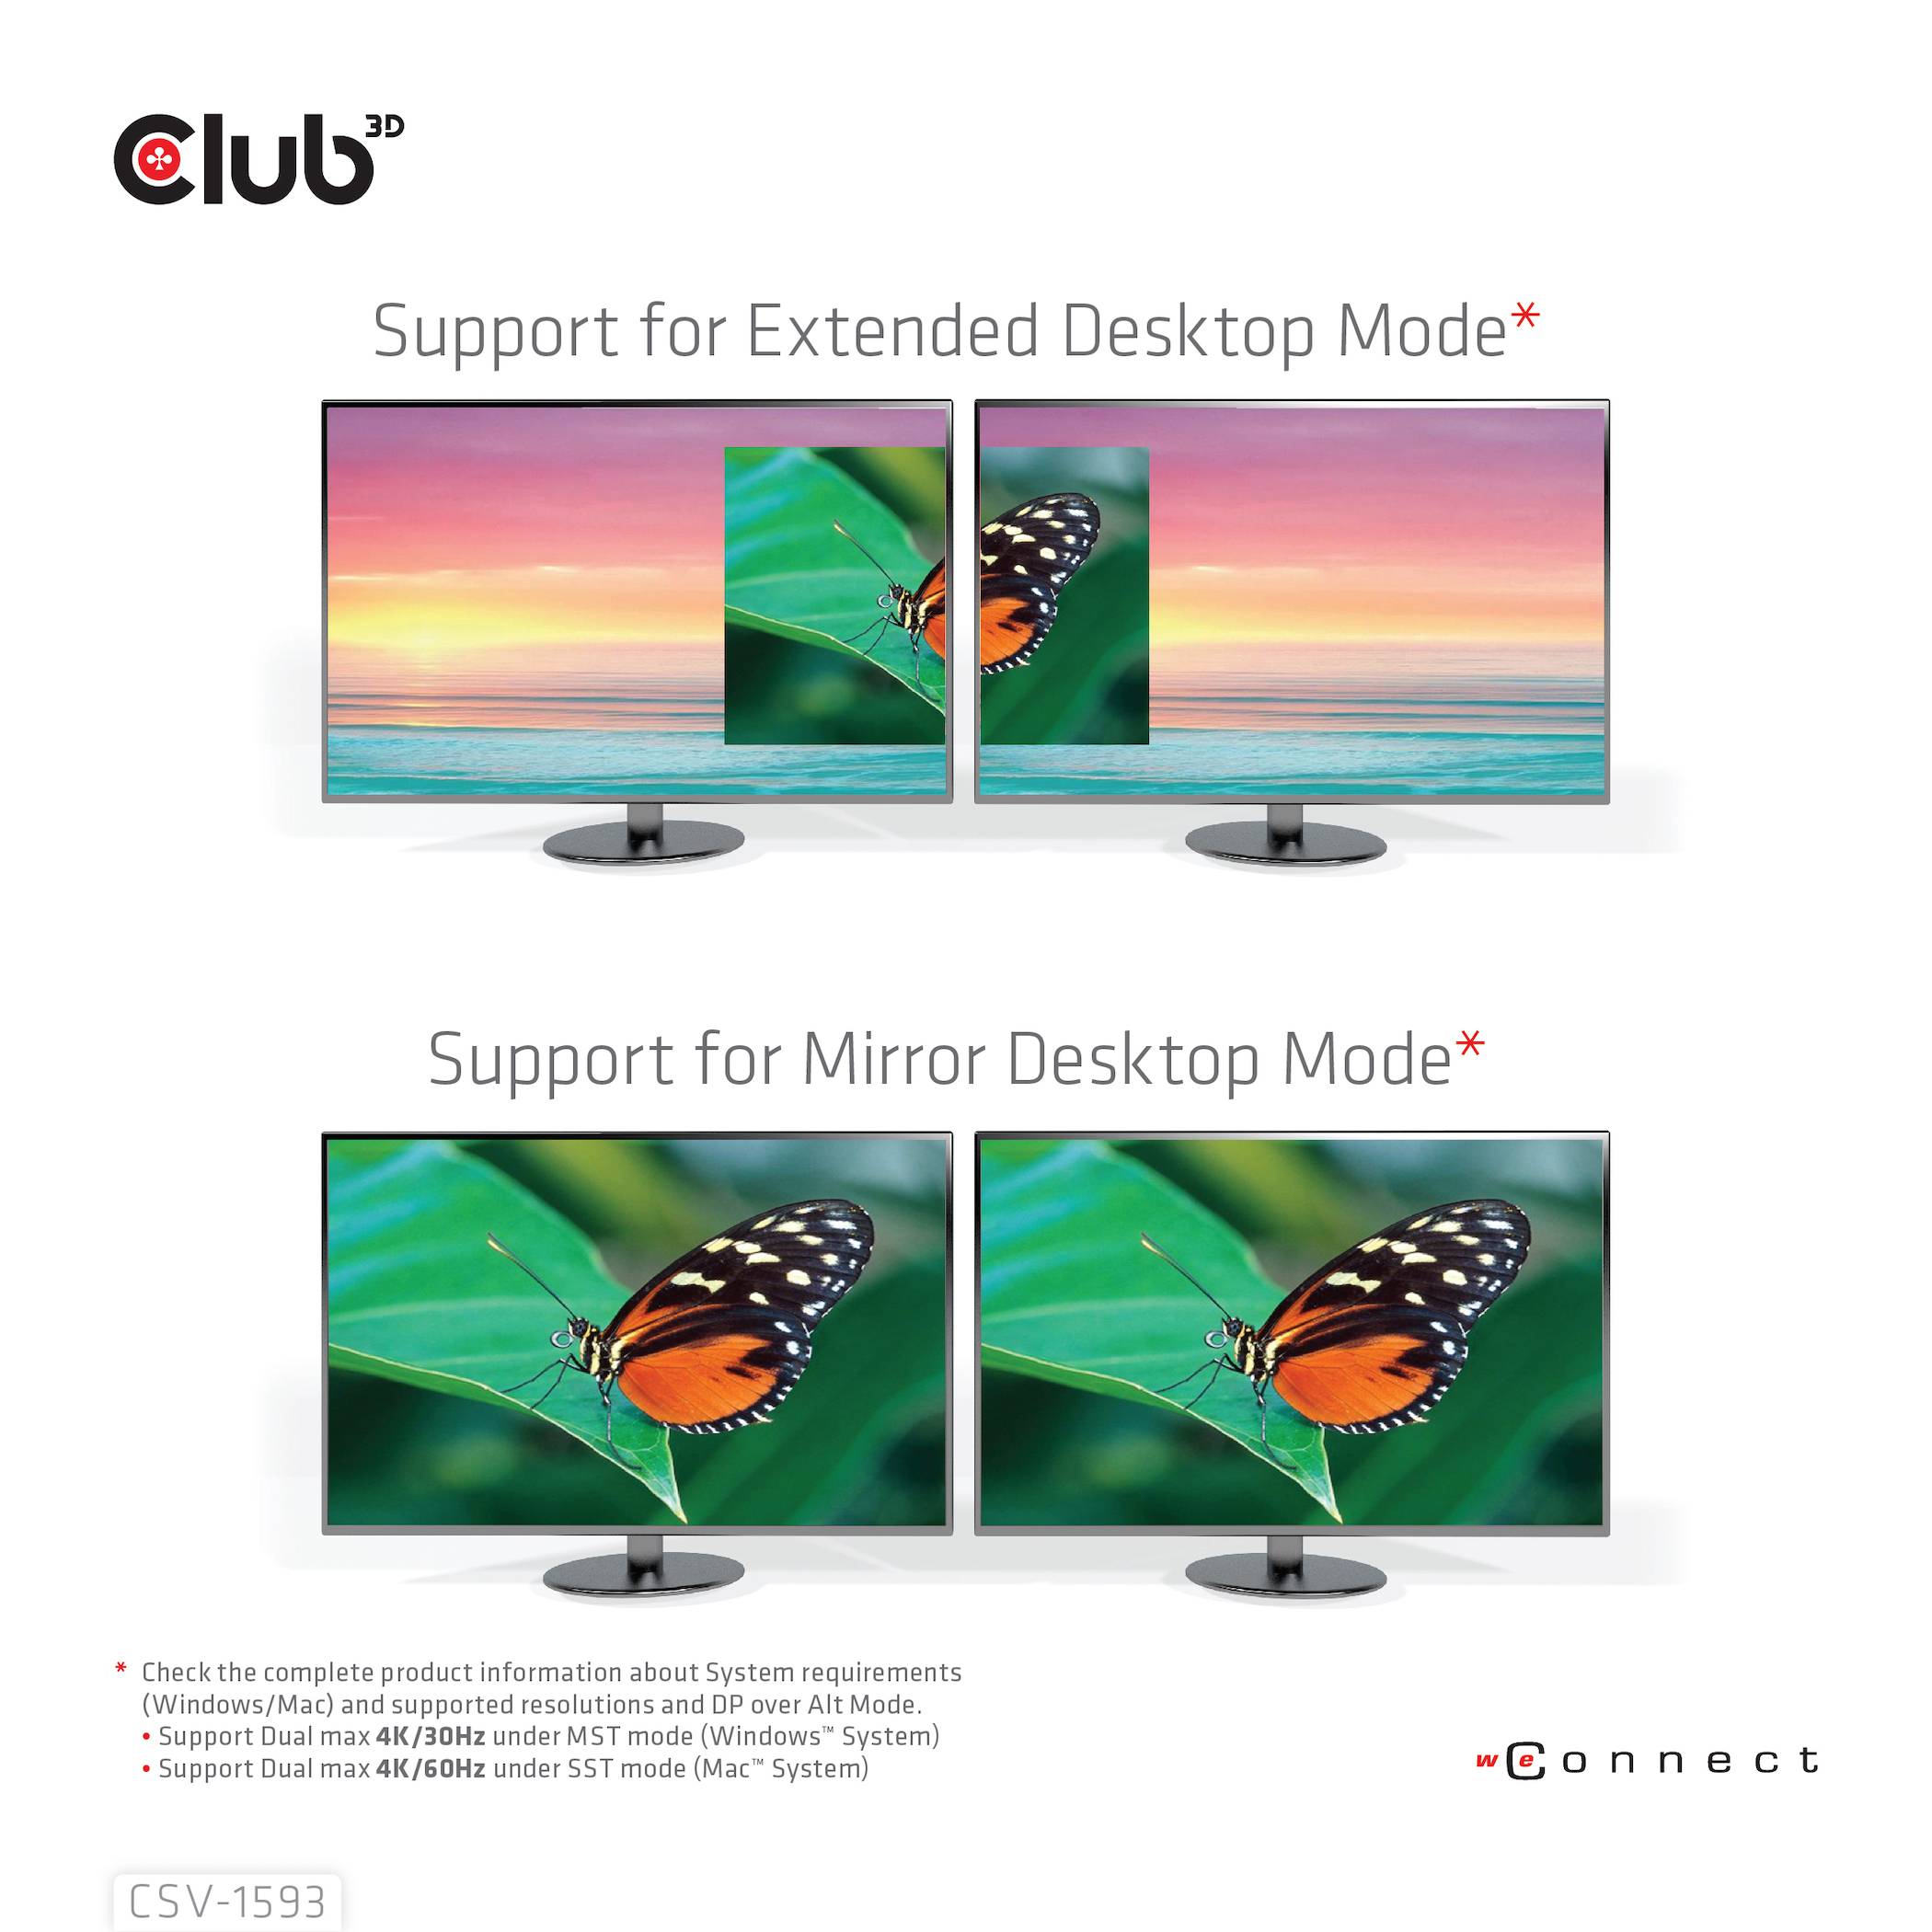 Club 3D Dockingstation - USB-C 3.2 Gen 1 / Thunderbolt 3